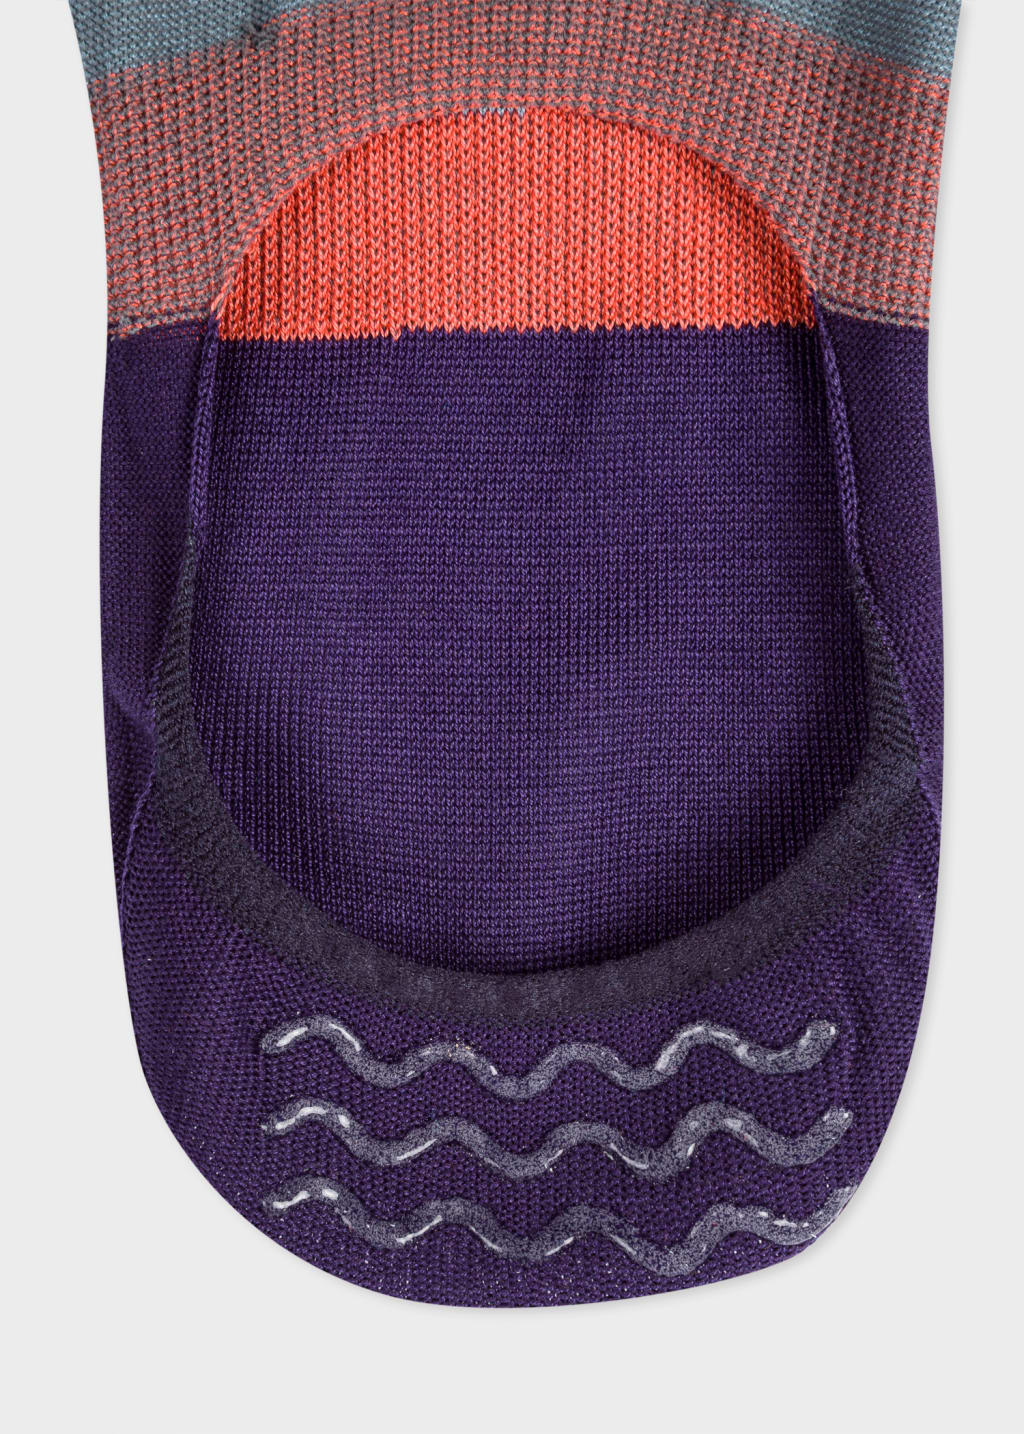 Detail View - Purple 'Artist Stripe' Loafer Socks Paul Smith